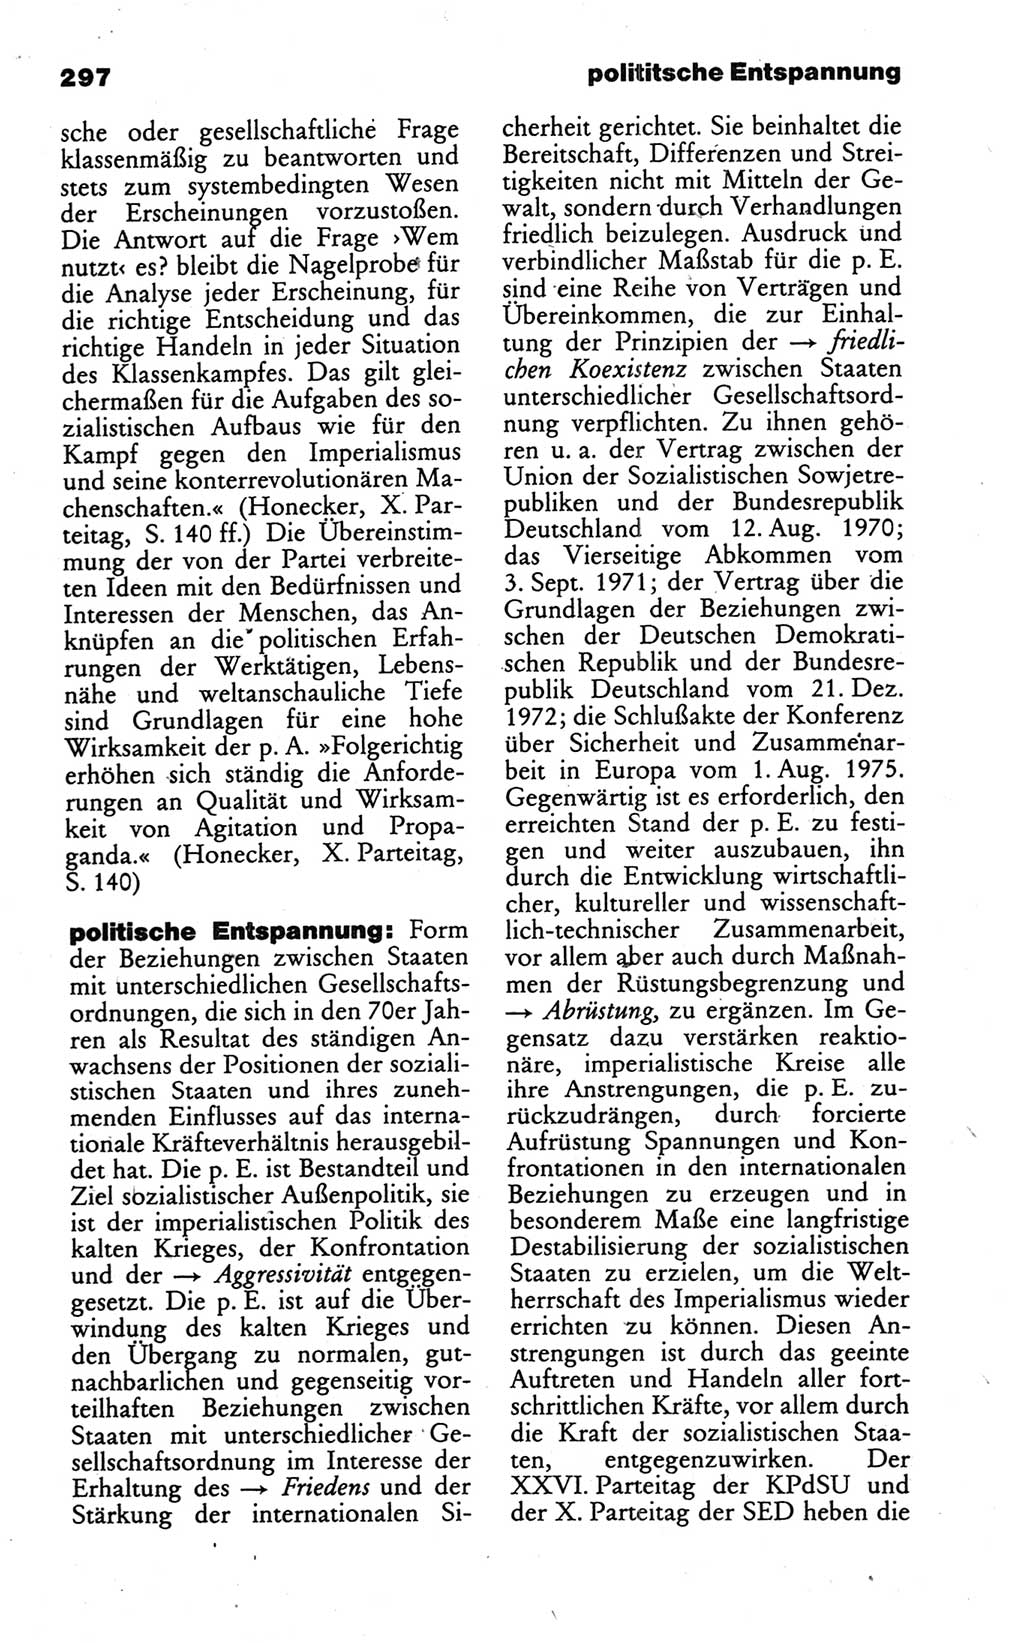 Wörterbuch des wissenschaftlichen Kommunismus [Deutsche Demokratische Republik (DDR)] 1986, Seite 297 (Wb. wiss. Komm. DDR 1986, S. 297)